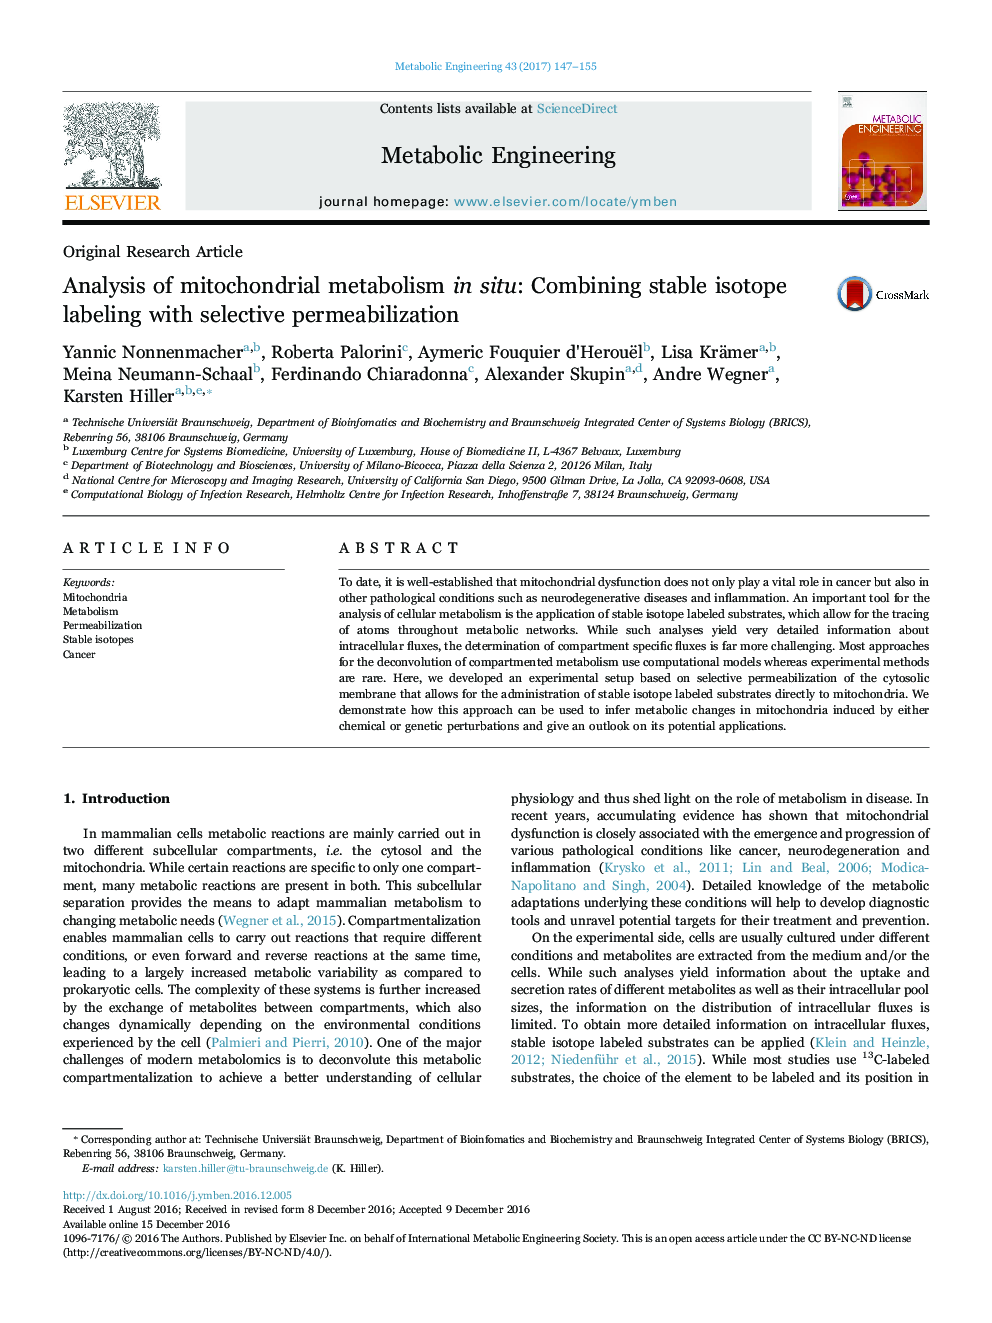 تجزیه و تحلیل متابولیسم میتوکندری در محل: ترکیبی از نشانه ایزوتوپ پایدار با نفوذ پذیری انتخابی